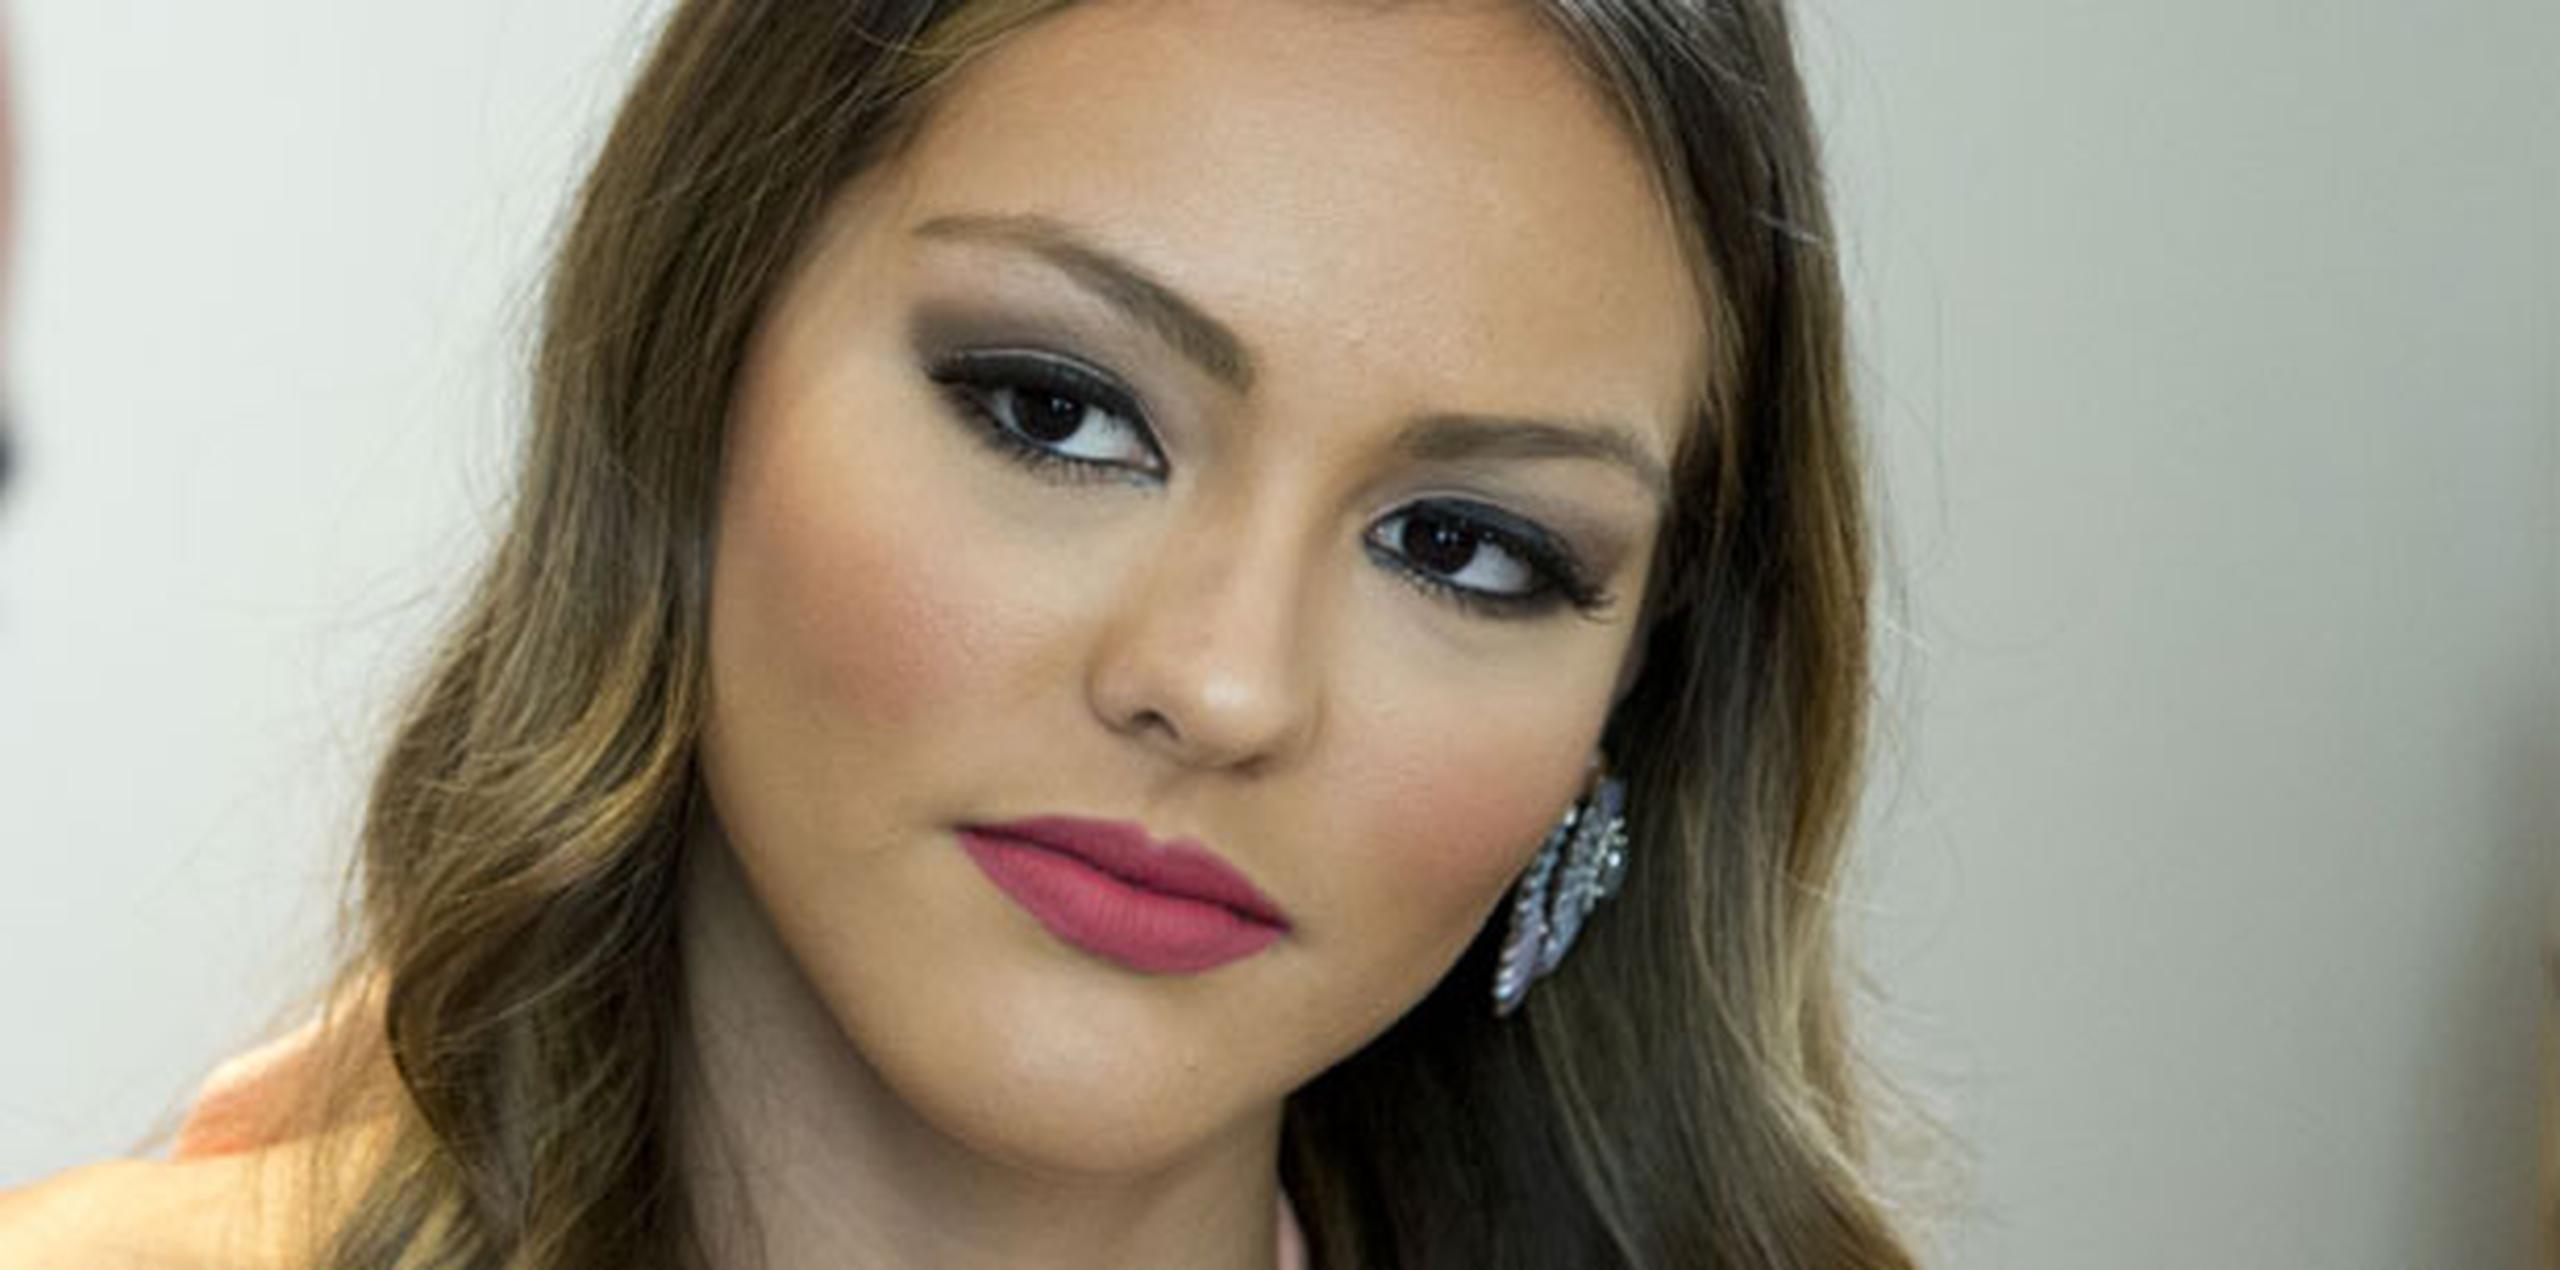 El juicio de la joven, quien fue destituida del título de Miss Universe Puerto Rico 2016 por supuestamente incumplir con su contrato, se verá en su fondo en julio de este año en el Tribunal de Bayamón. (Archivo)